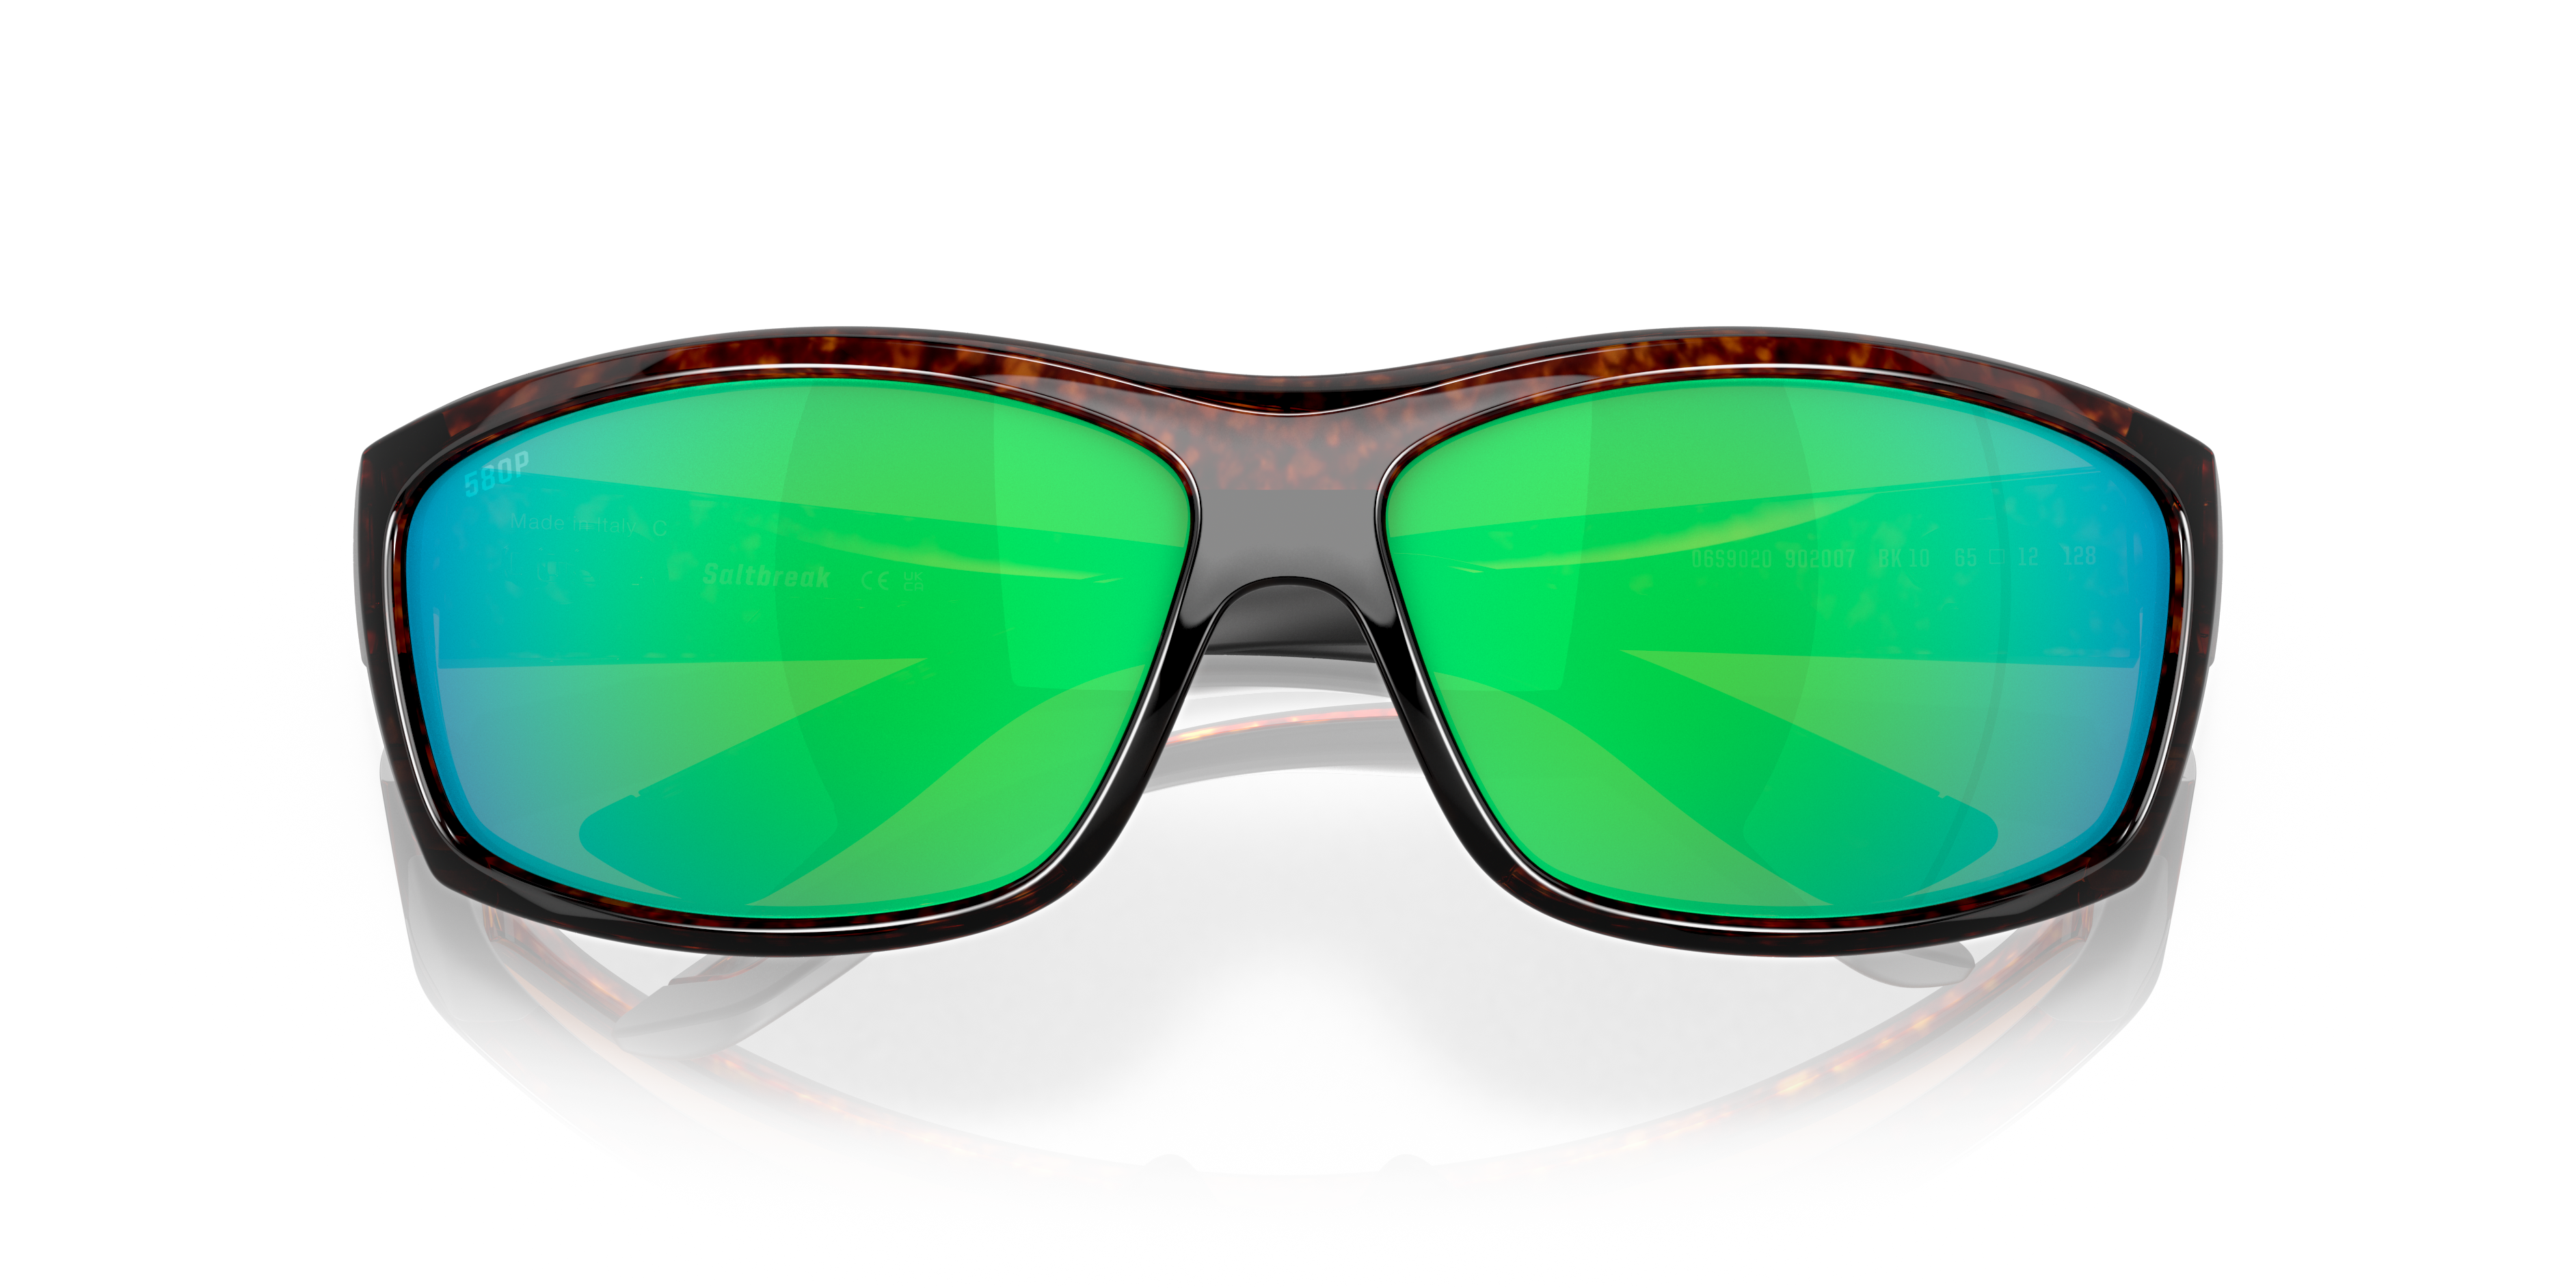 Saltbreak Polarized Sunglasses in Green Mirror | Costa Del Mar®